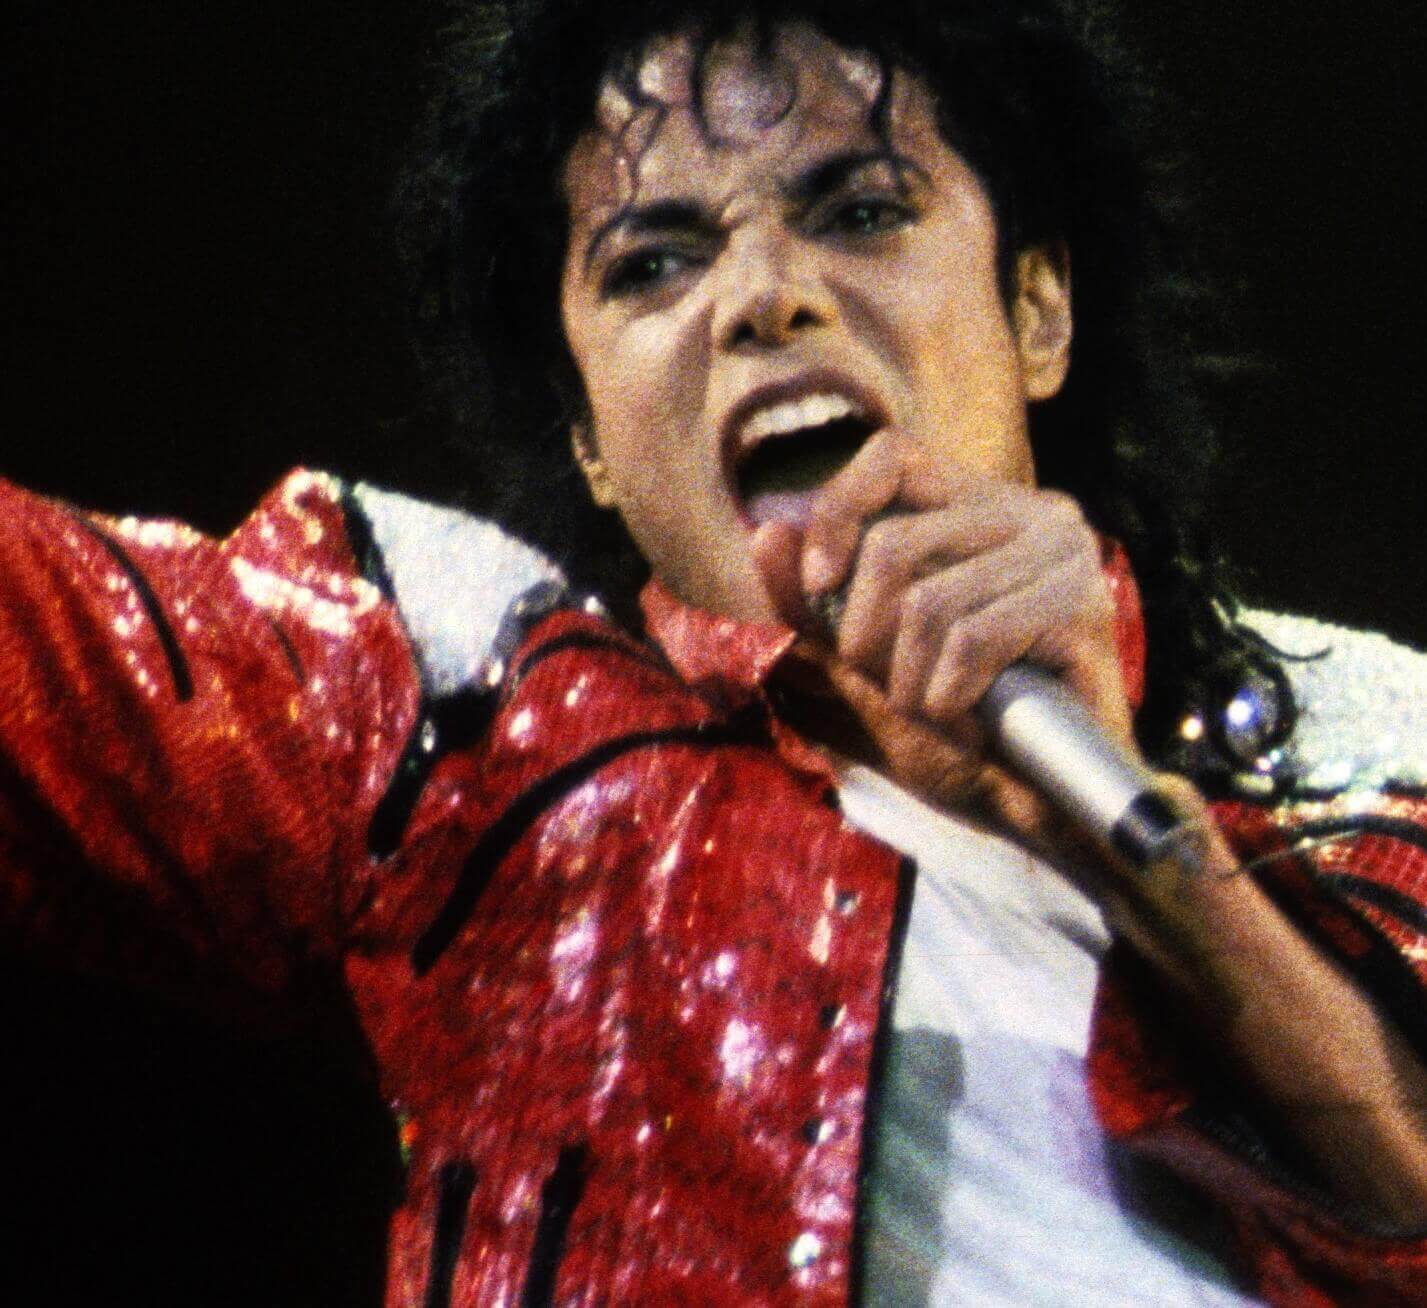 "Thriller" singer Michael Jackson wearing red